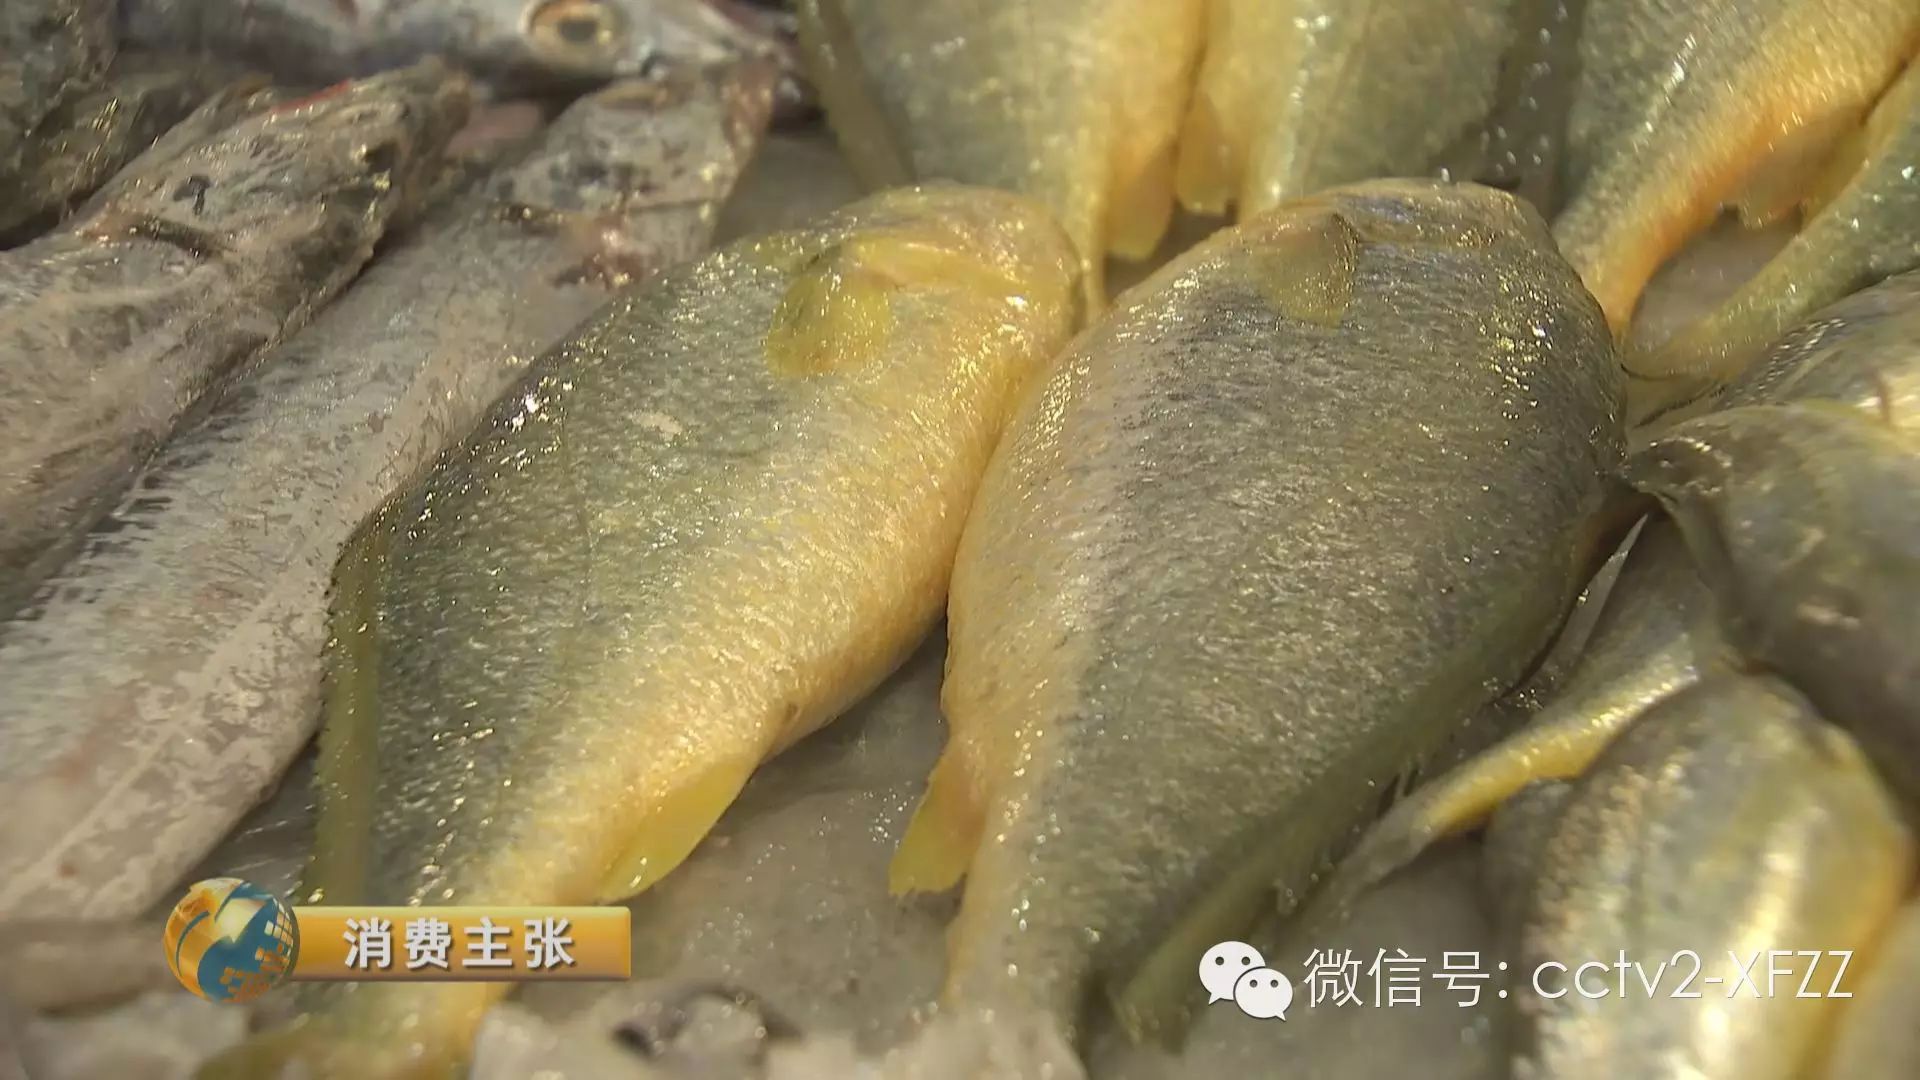 央视《消费主张》:千元一斤的大黄鱼 怎样买最新鲜?